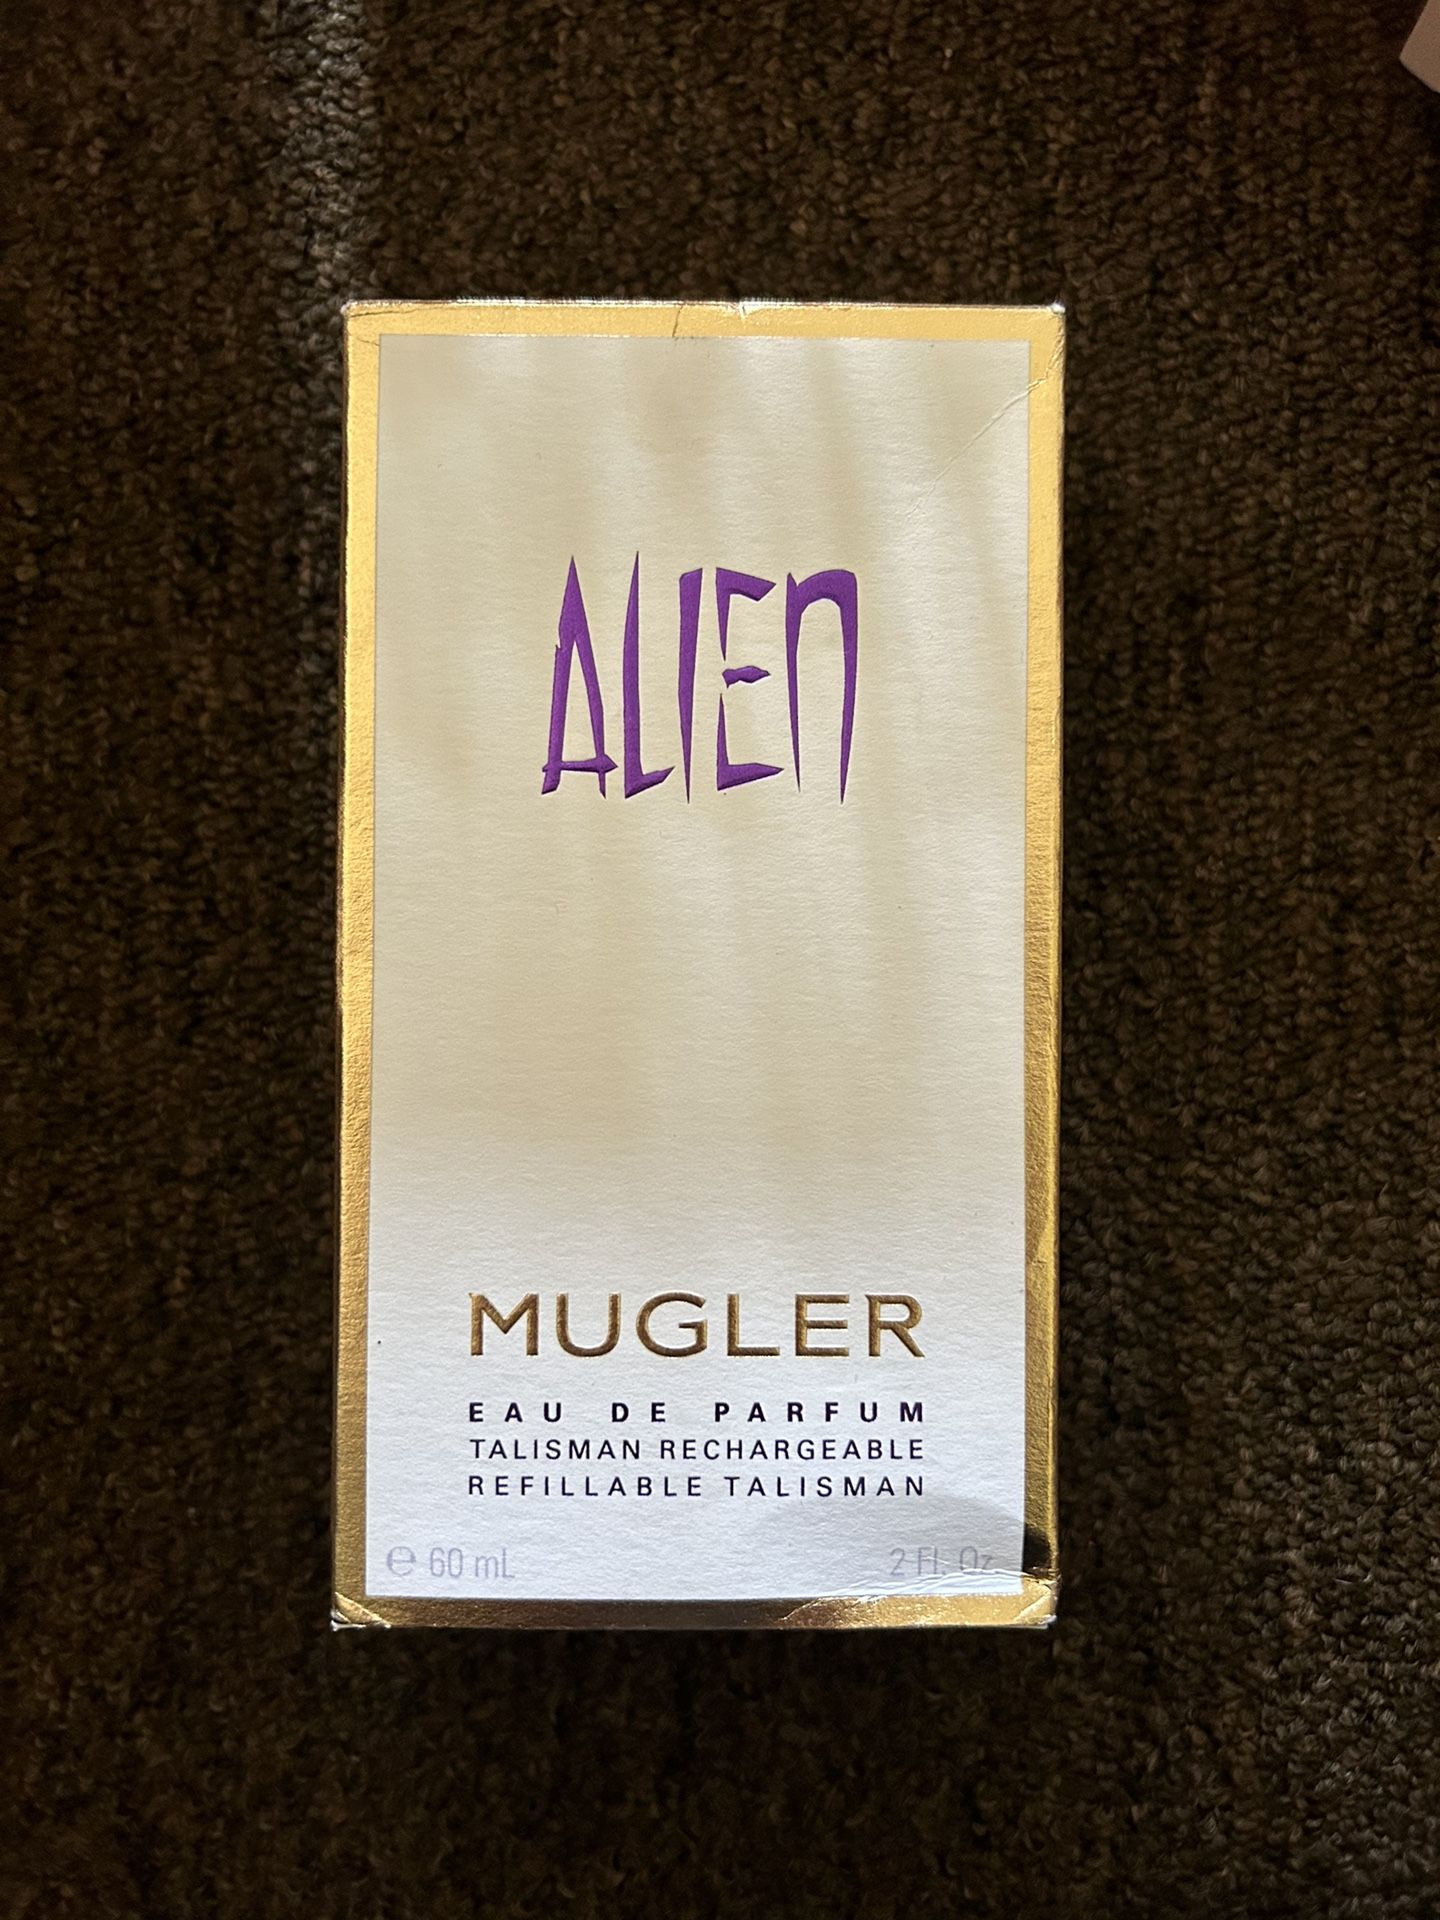 Alien Mugler perfume